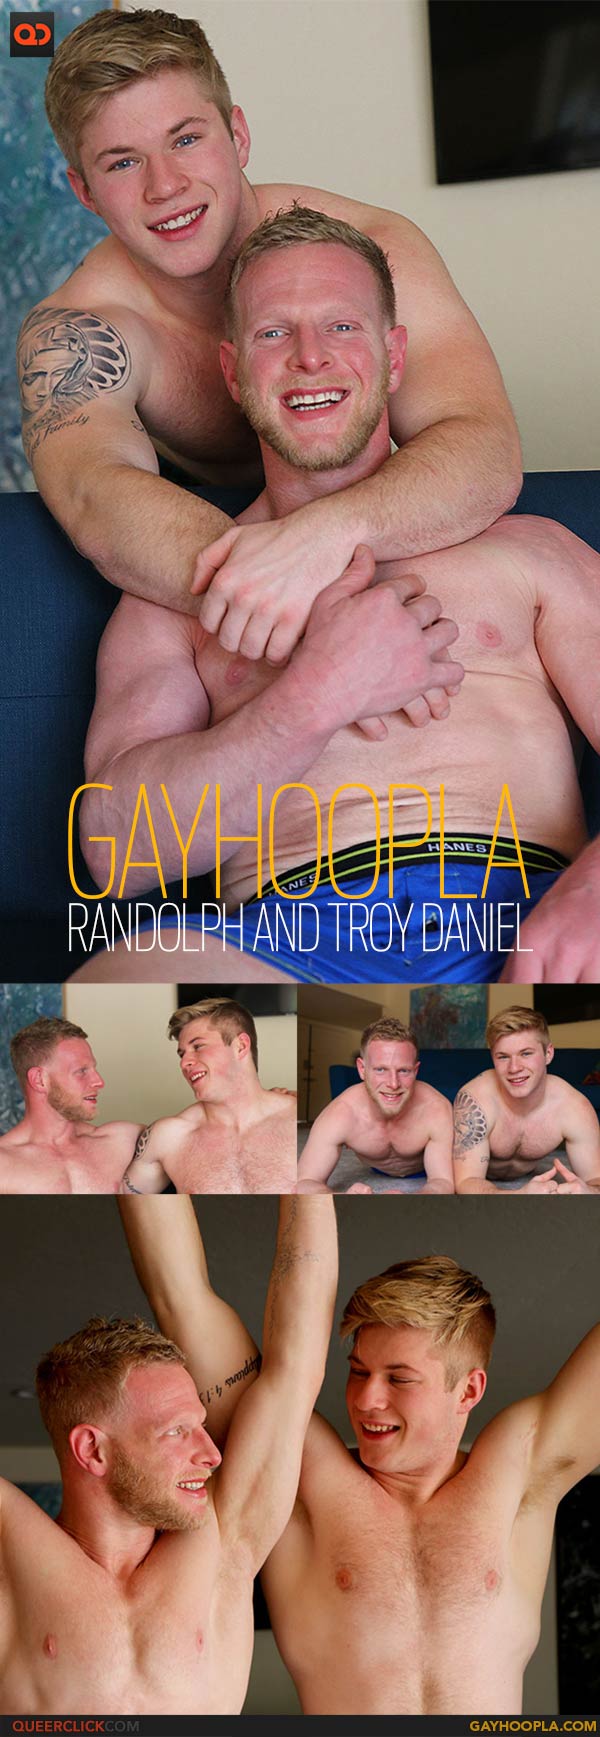 GayHoopla: Randolph and Troy Daniel